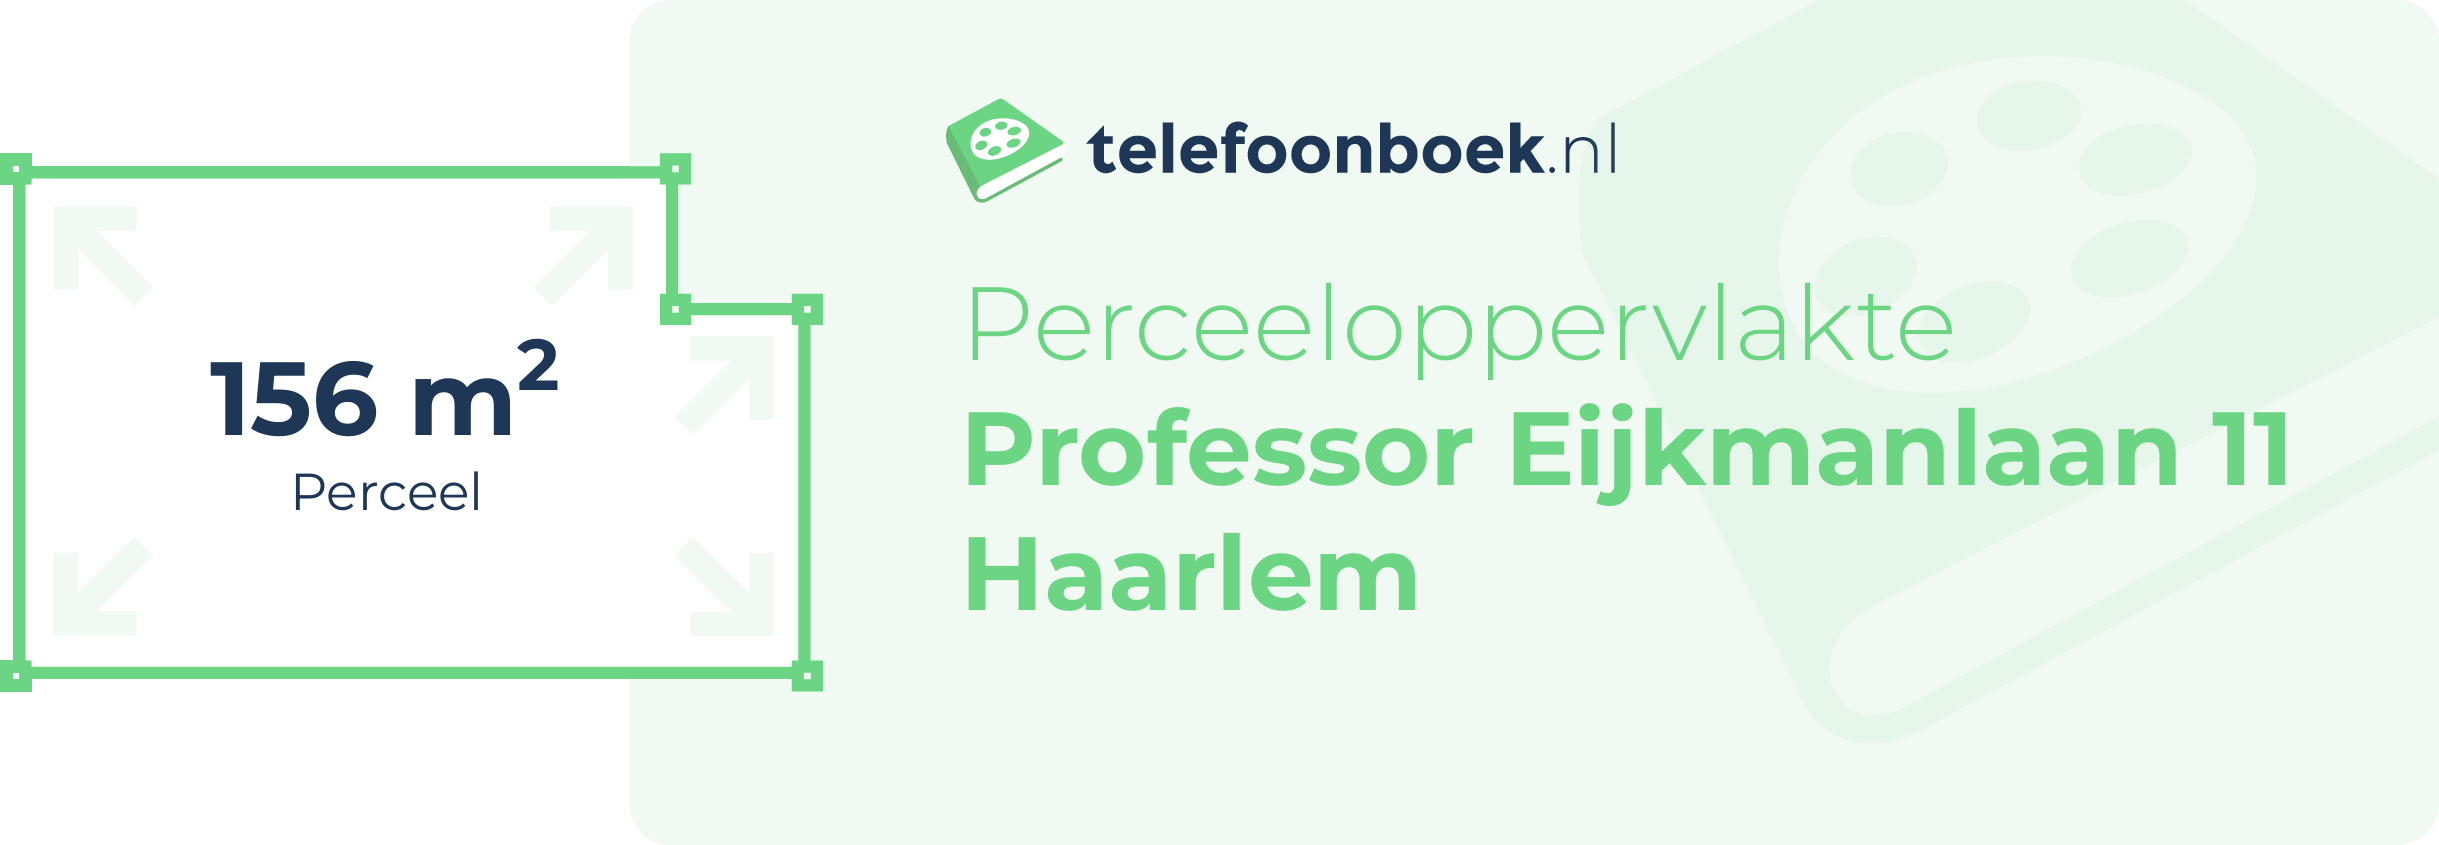 Perceeloppervlakte Professor Eijkmanlaan 11 Haarlem